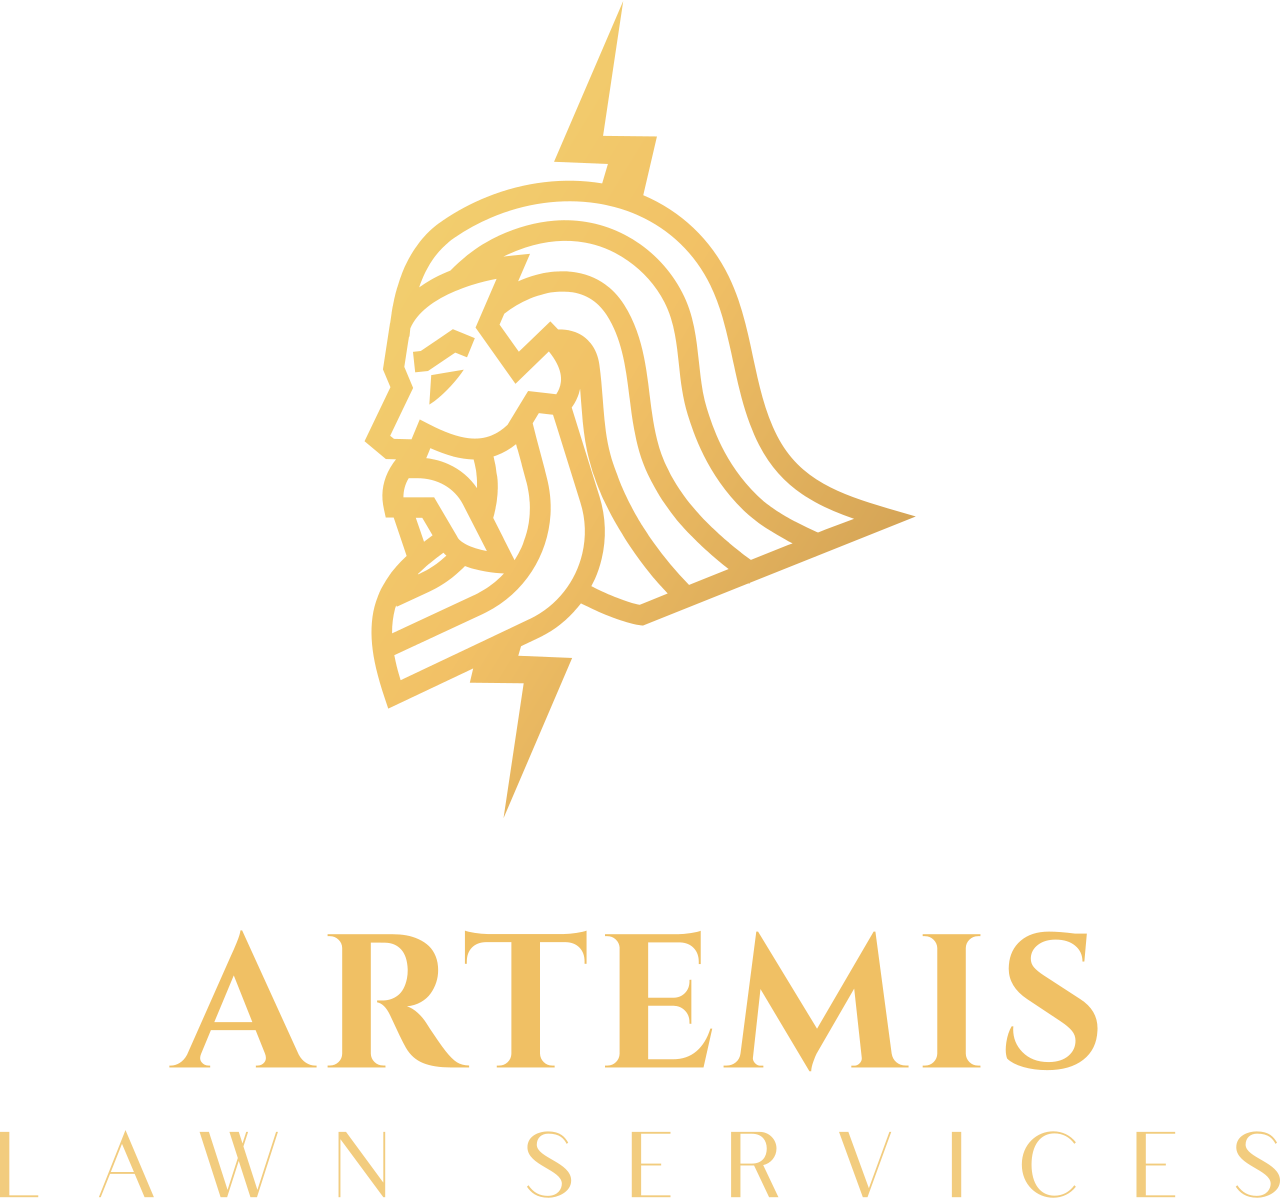 Artemis's logo